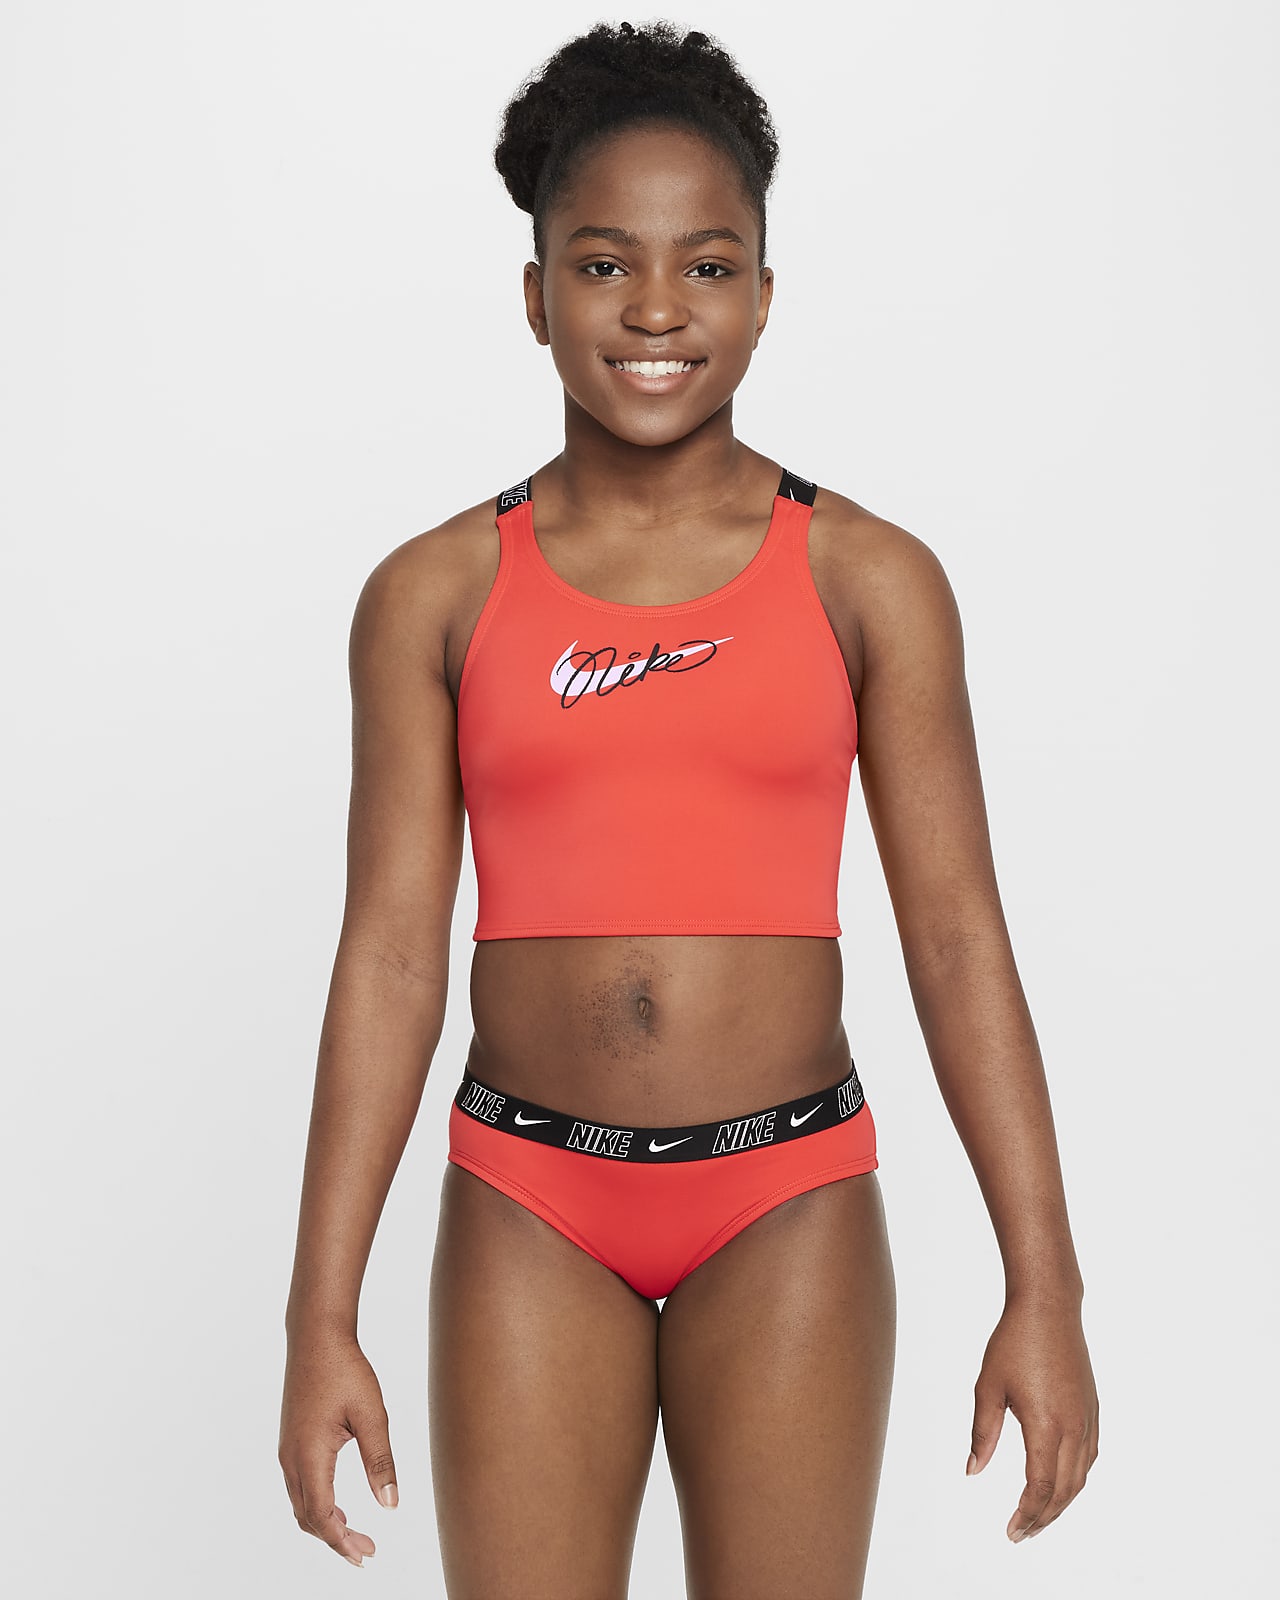 Nike Swim midkiniset met gekruiste bandjes voor meisjes